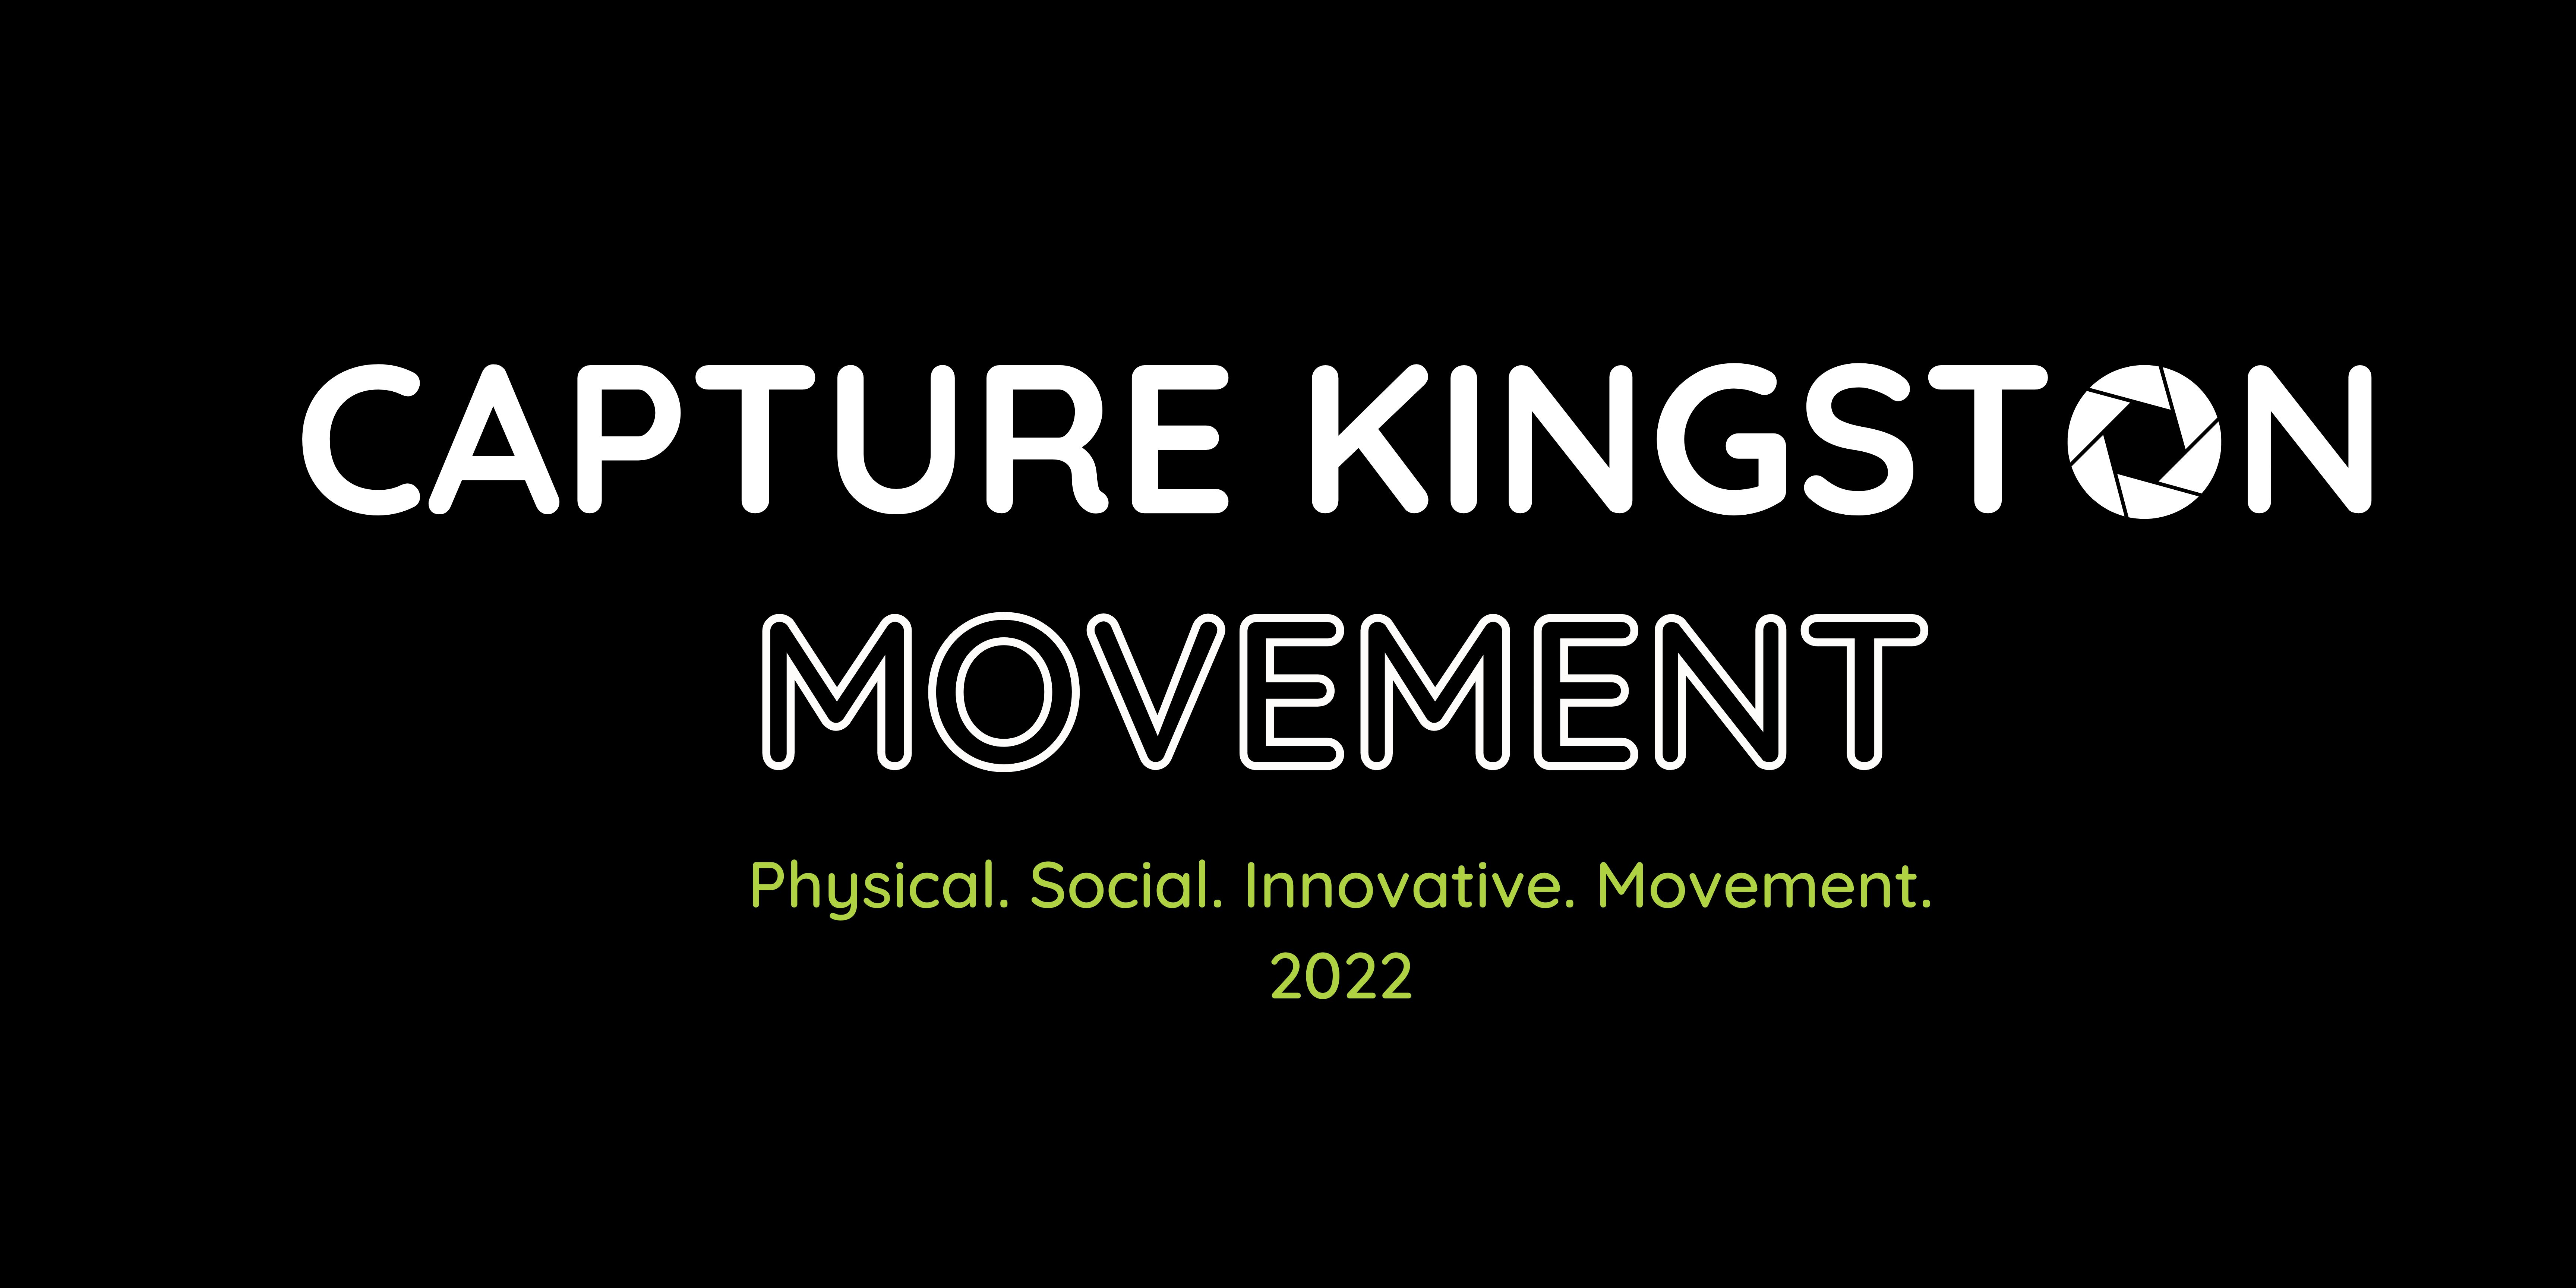 Capture Kingston 2022 movement